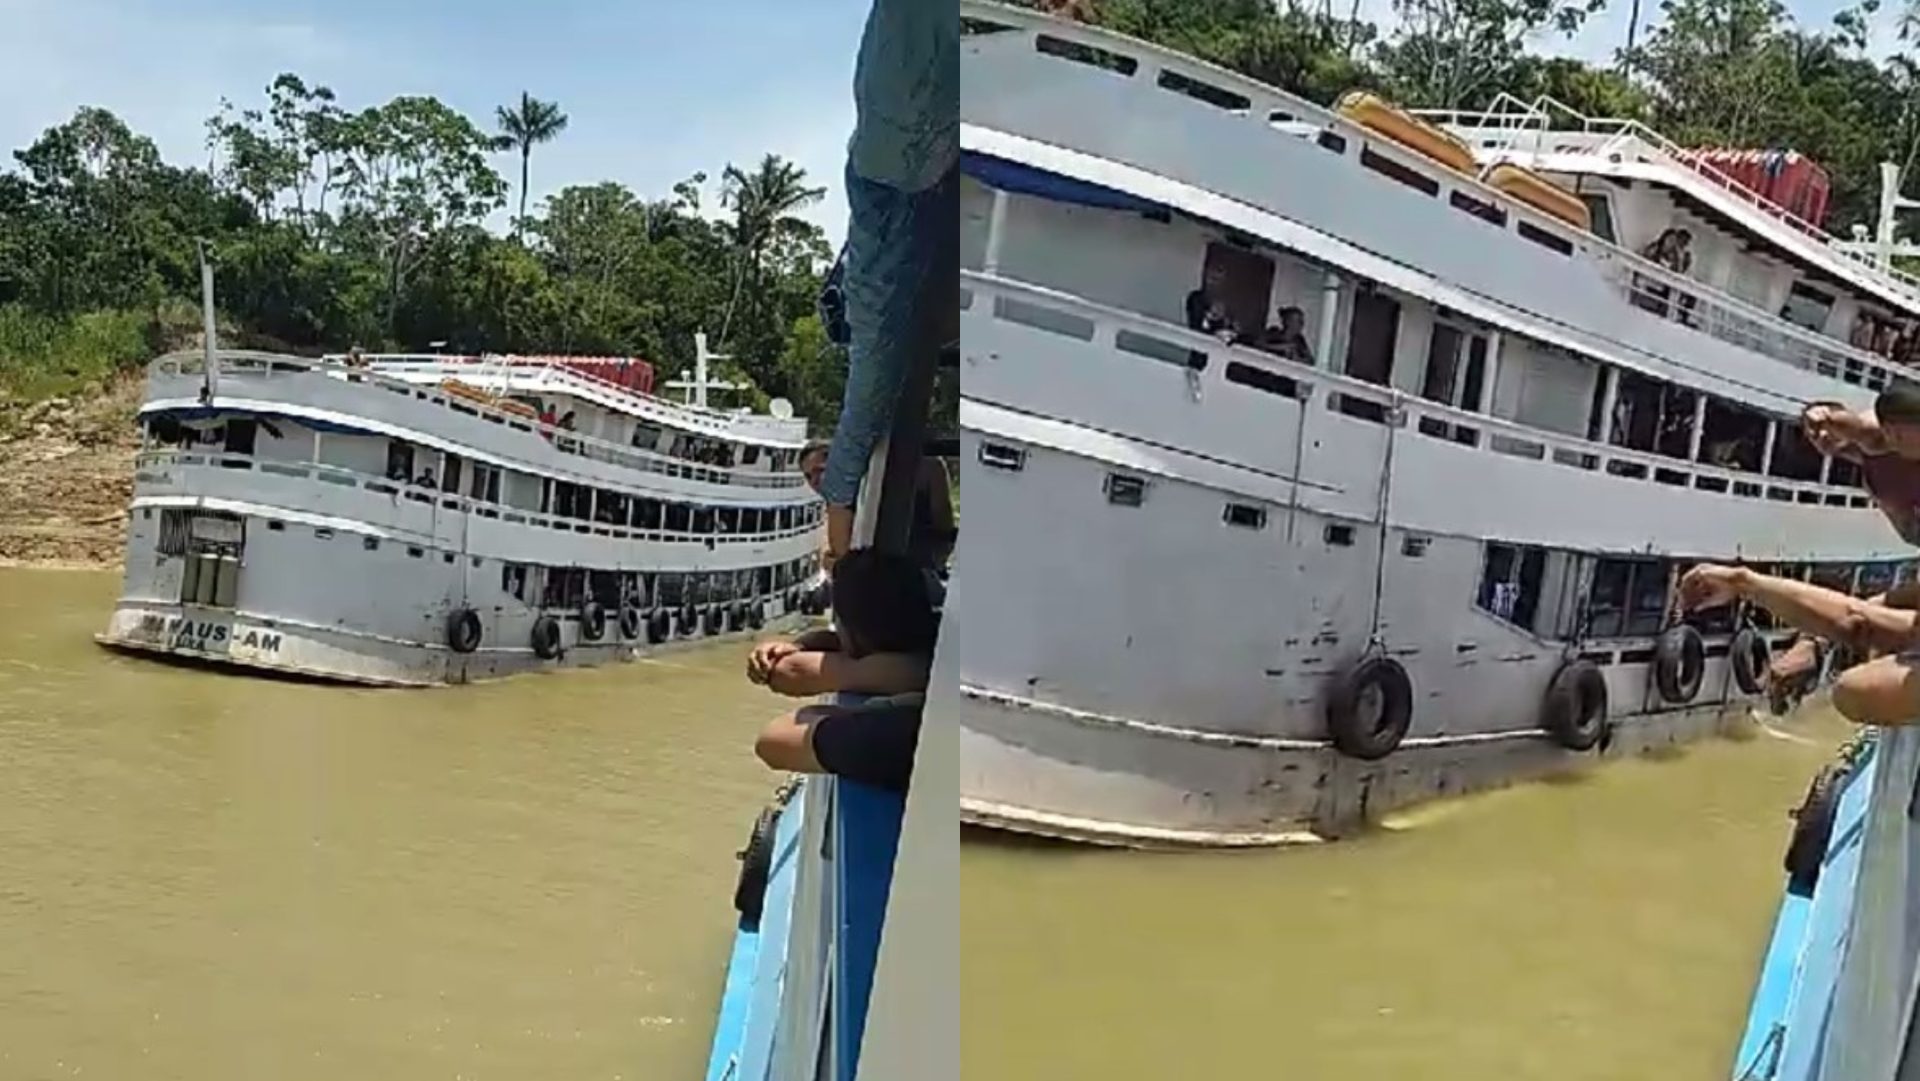 Resgate foi feito por outra embarcação que passava pelo local